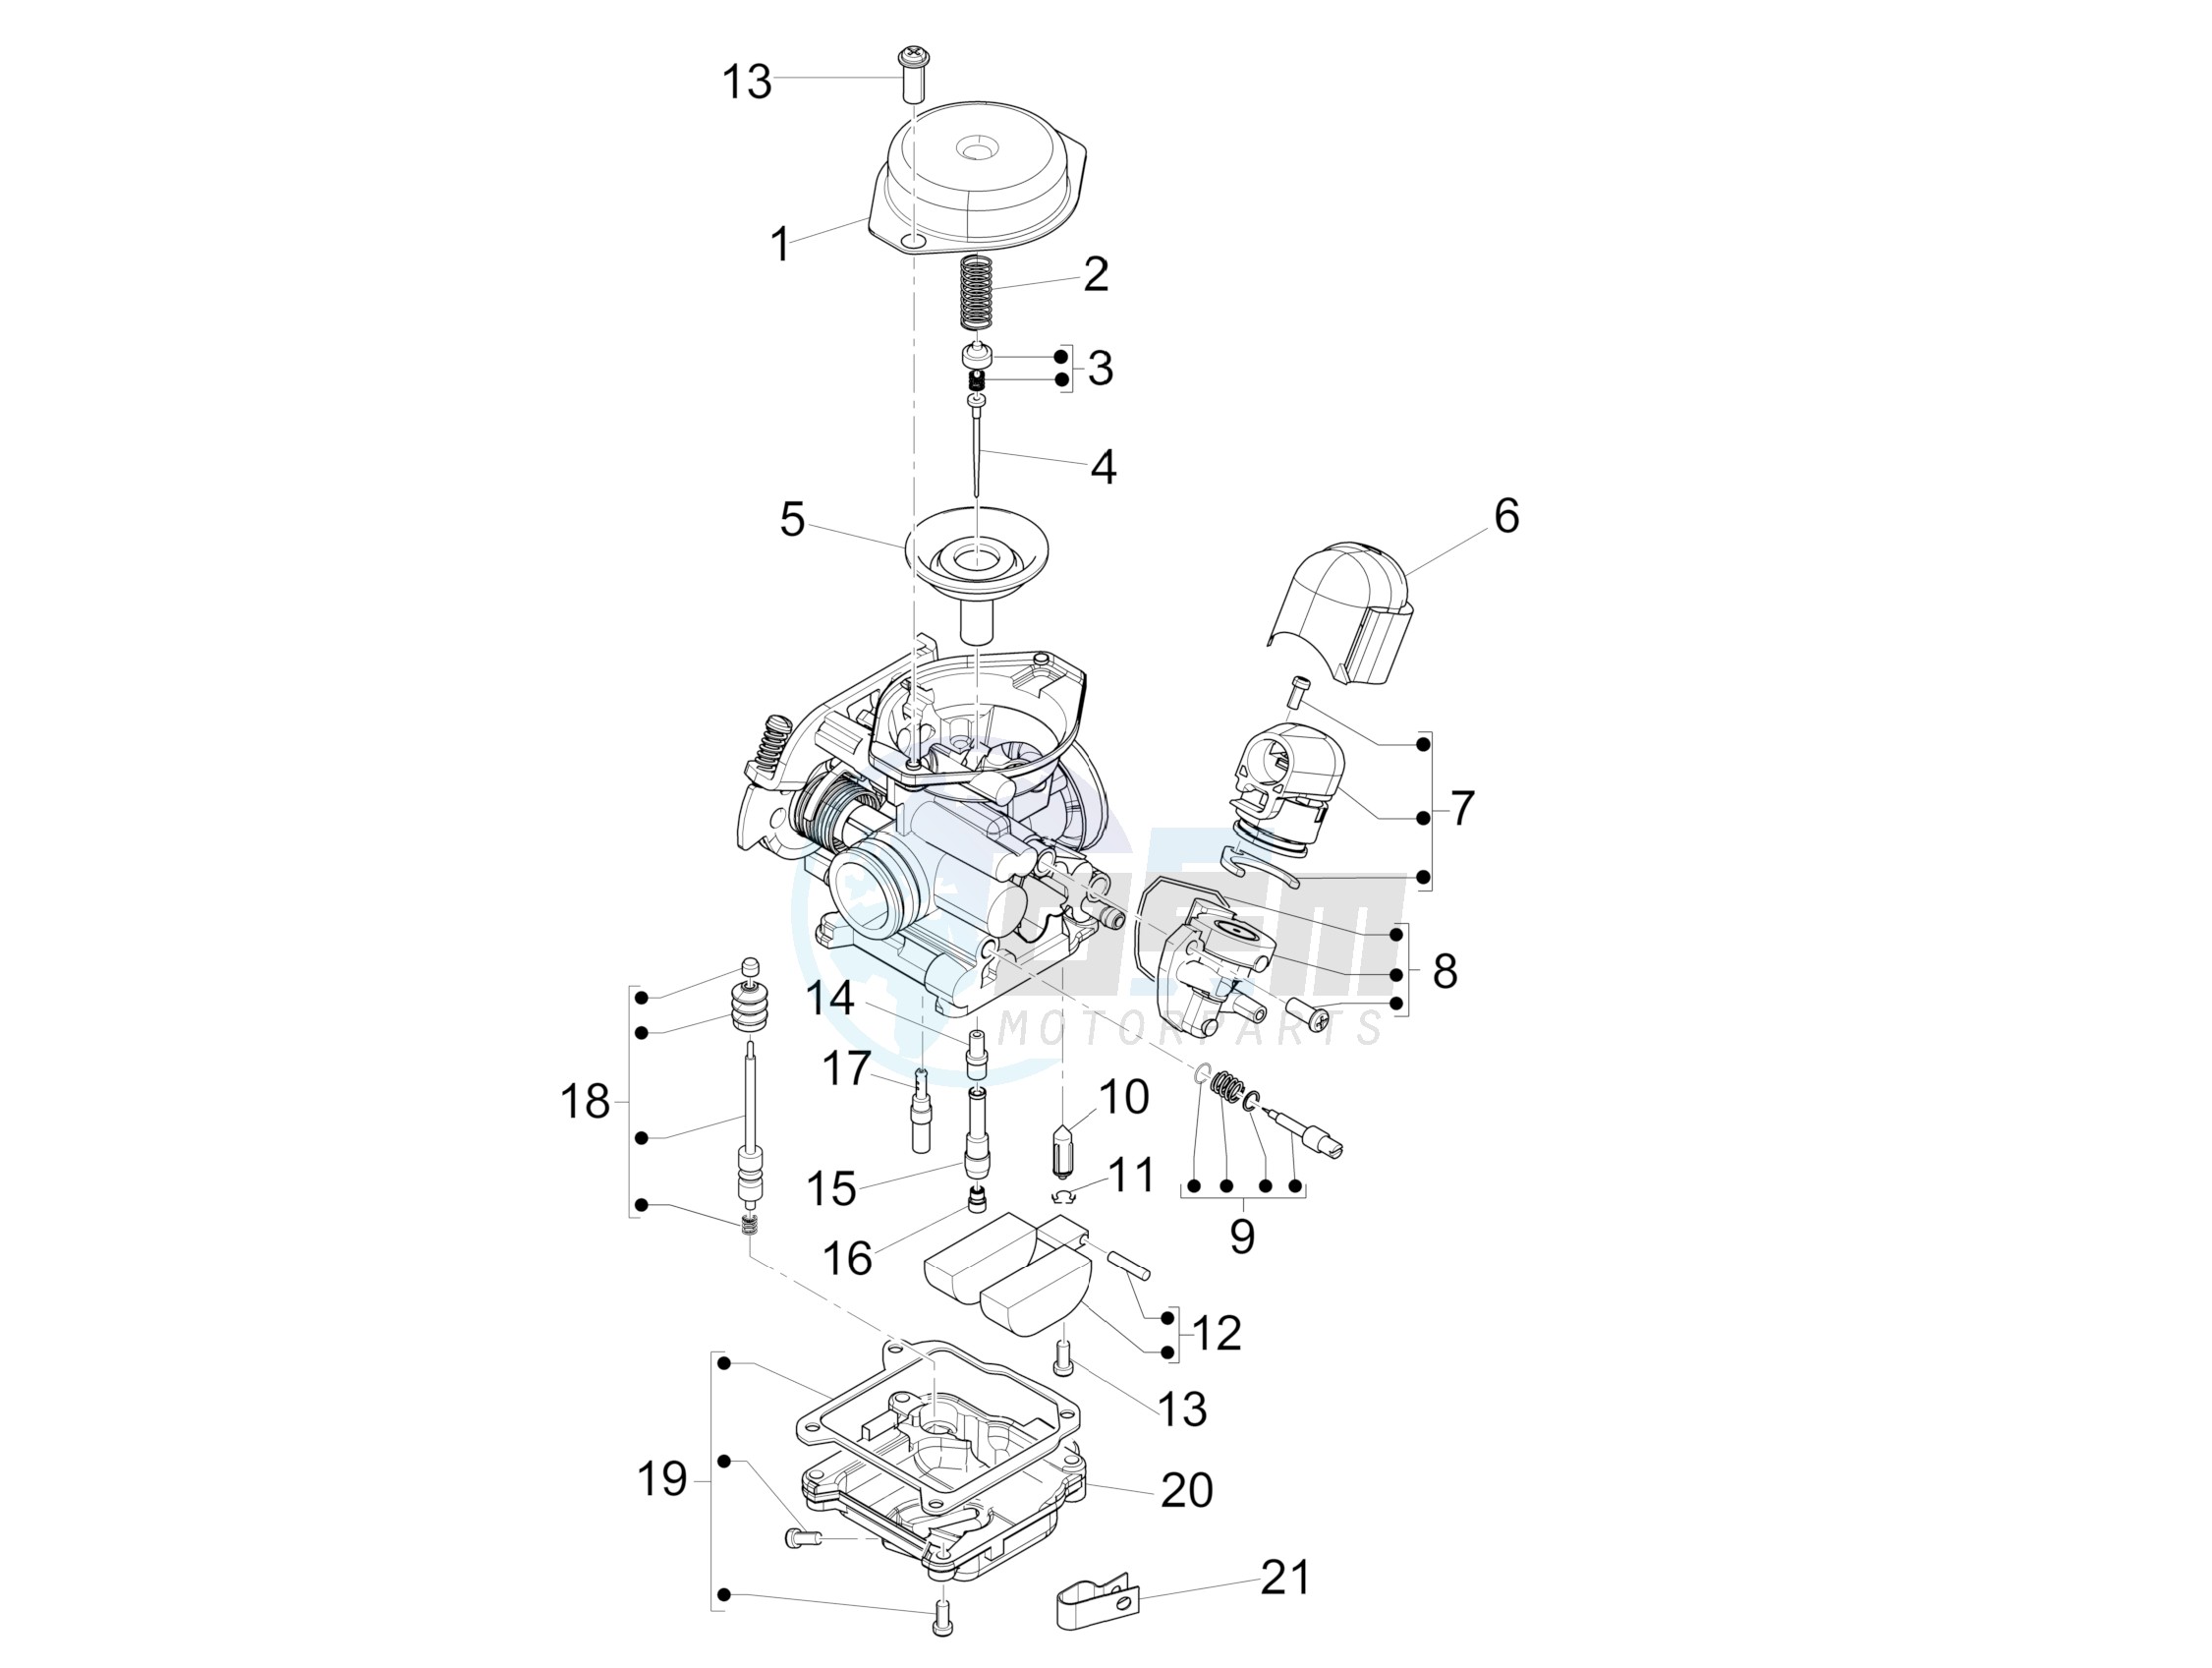 Carburetors components blueprint